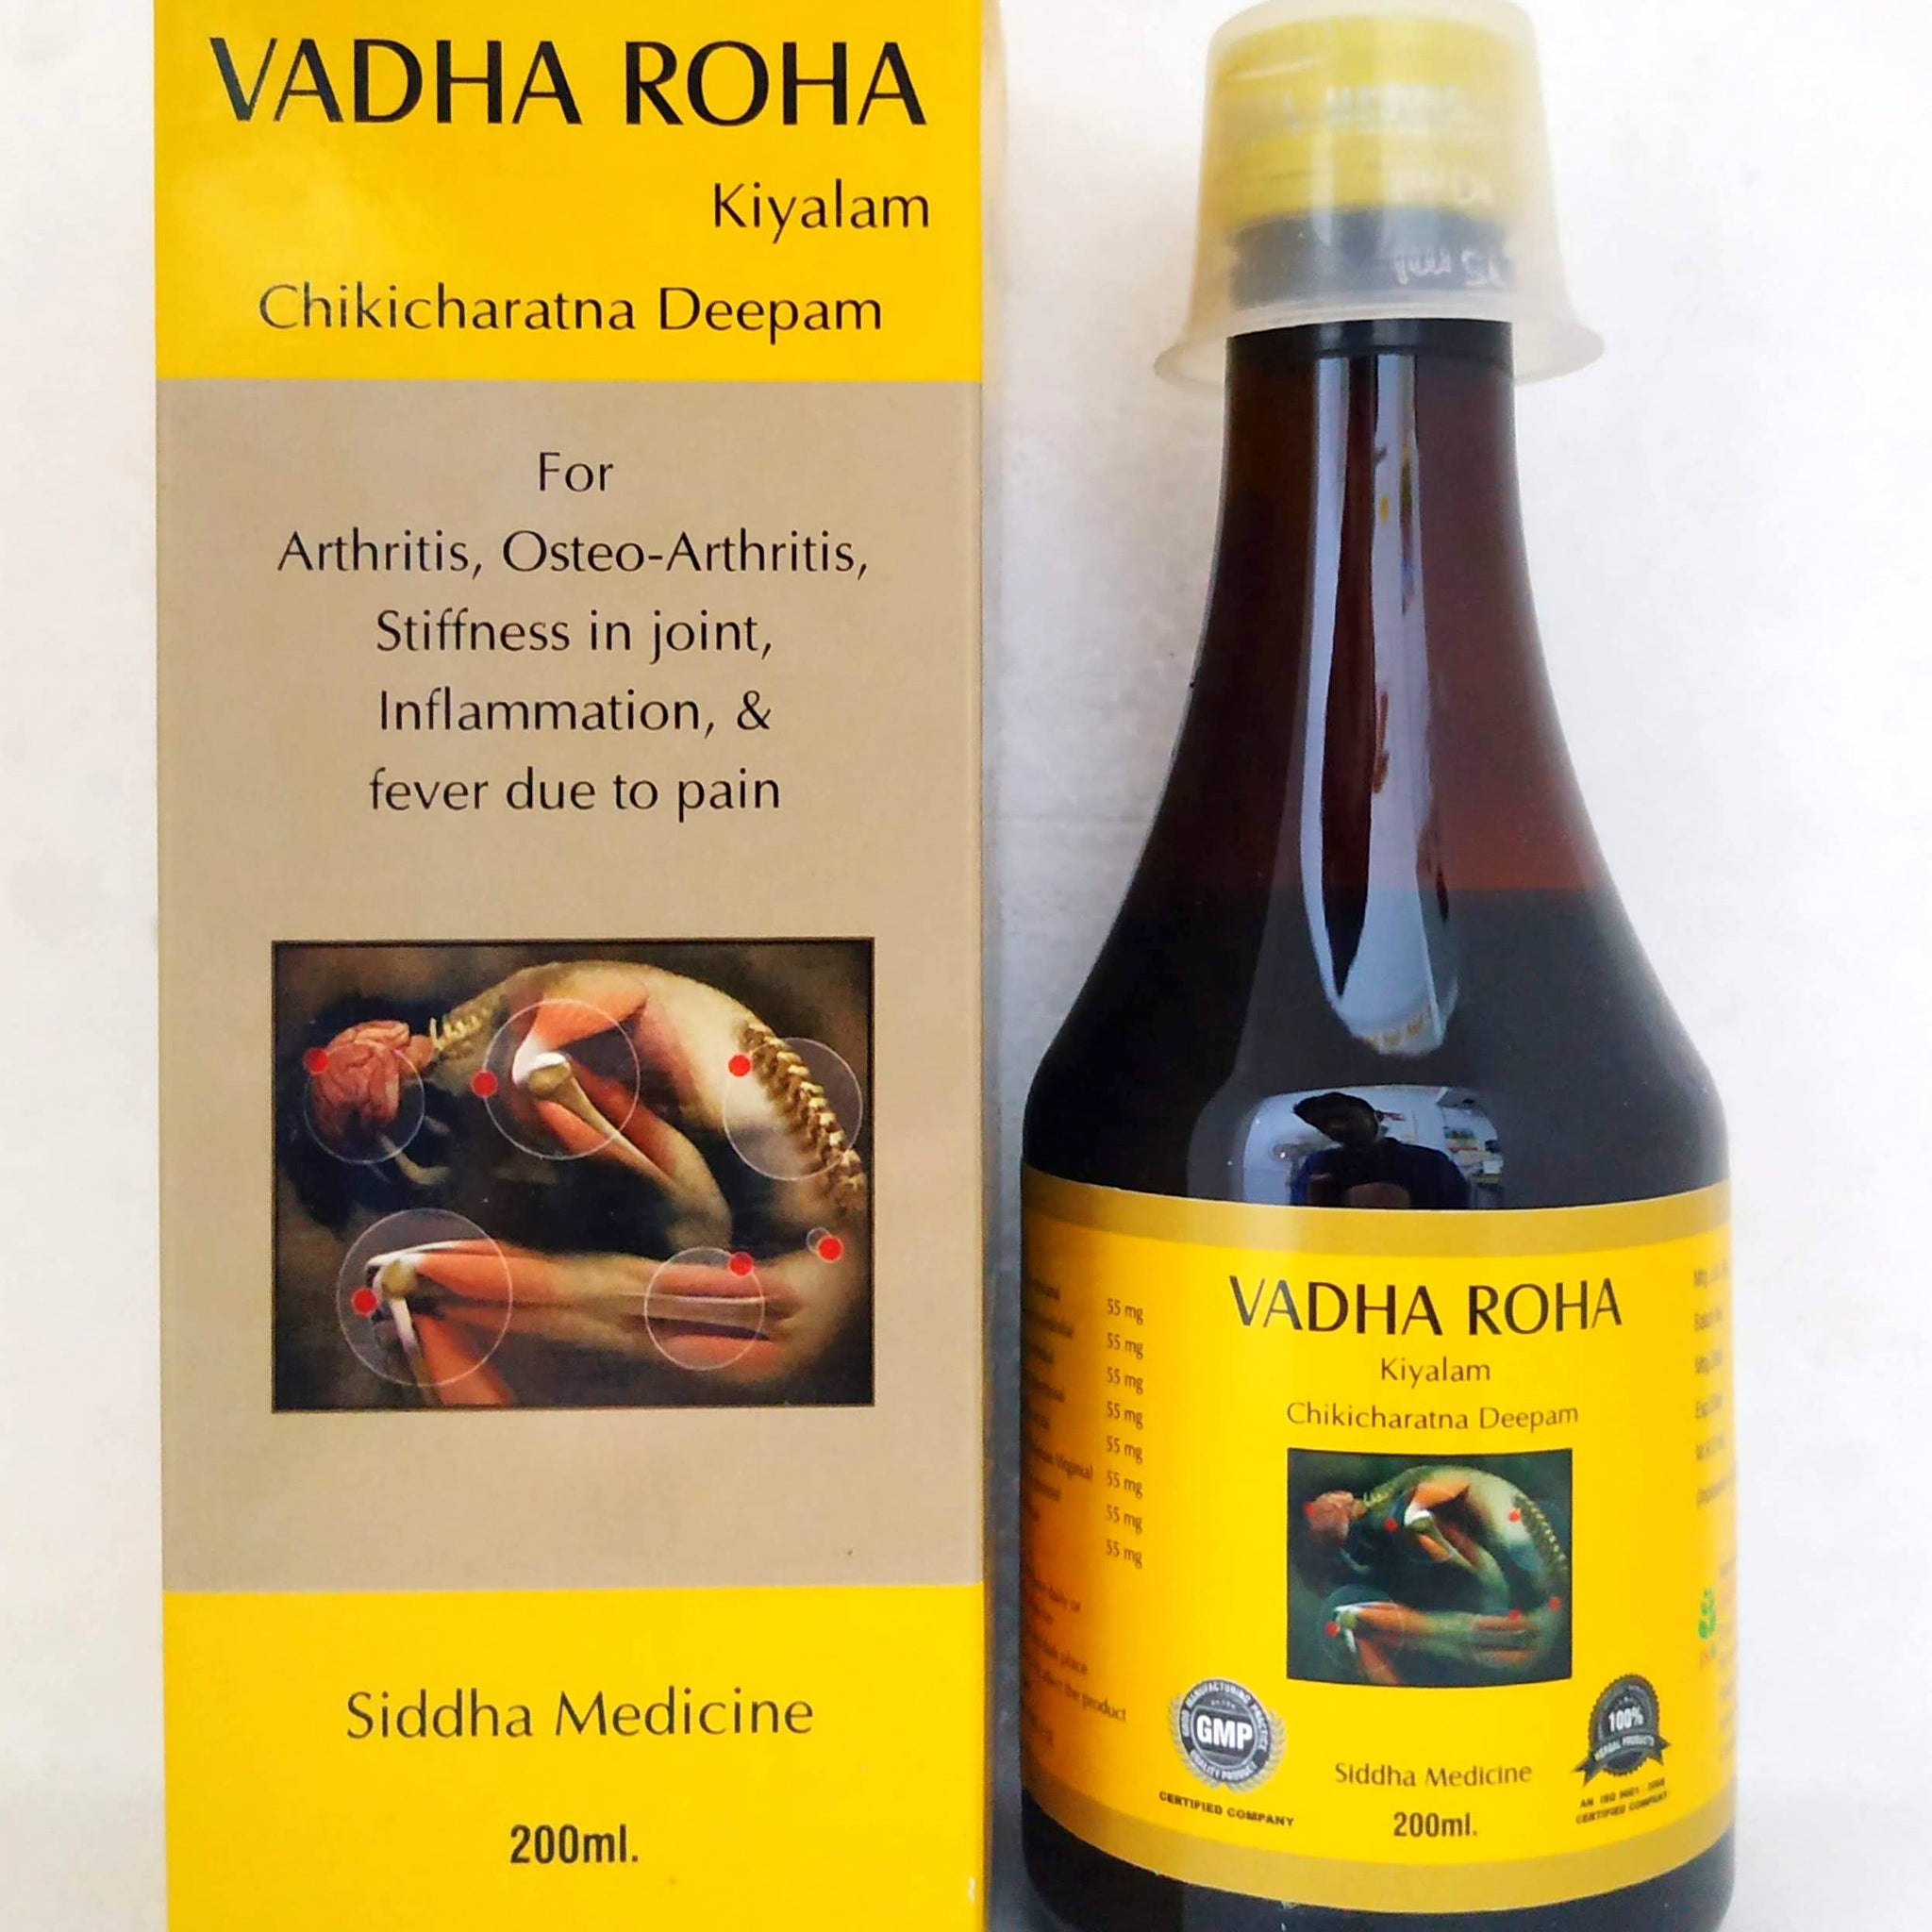 Shop Vadha roha kiyalam 200ml at price 156.00 from Jaisurya Herbals Online - Ayush Care